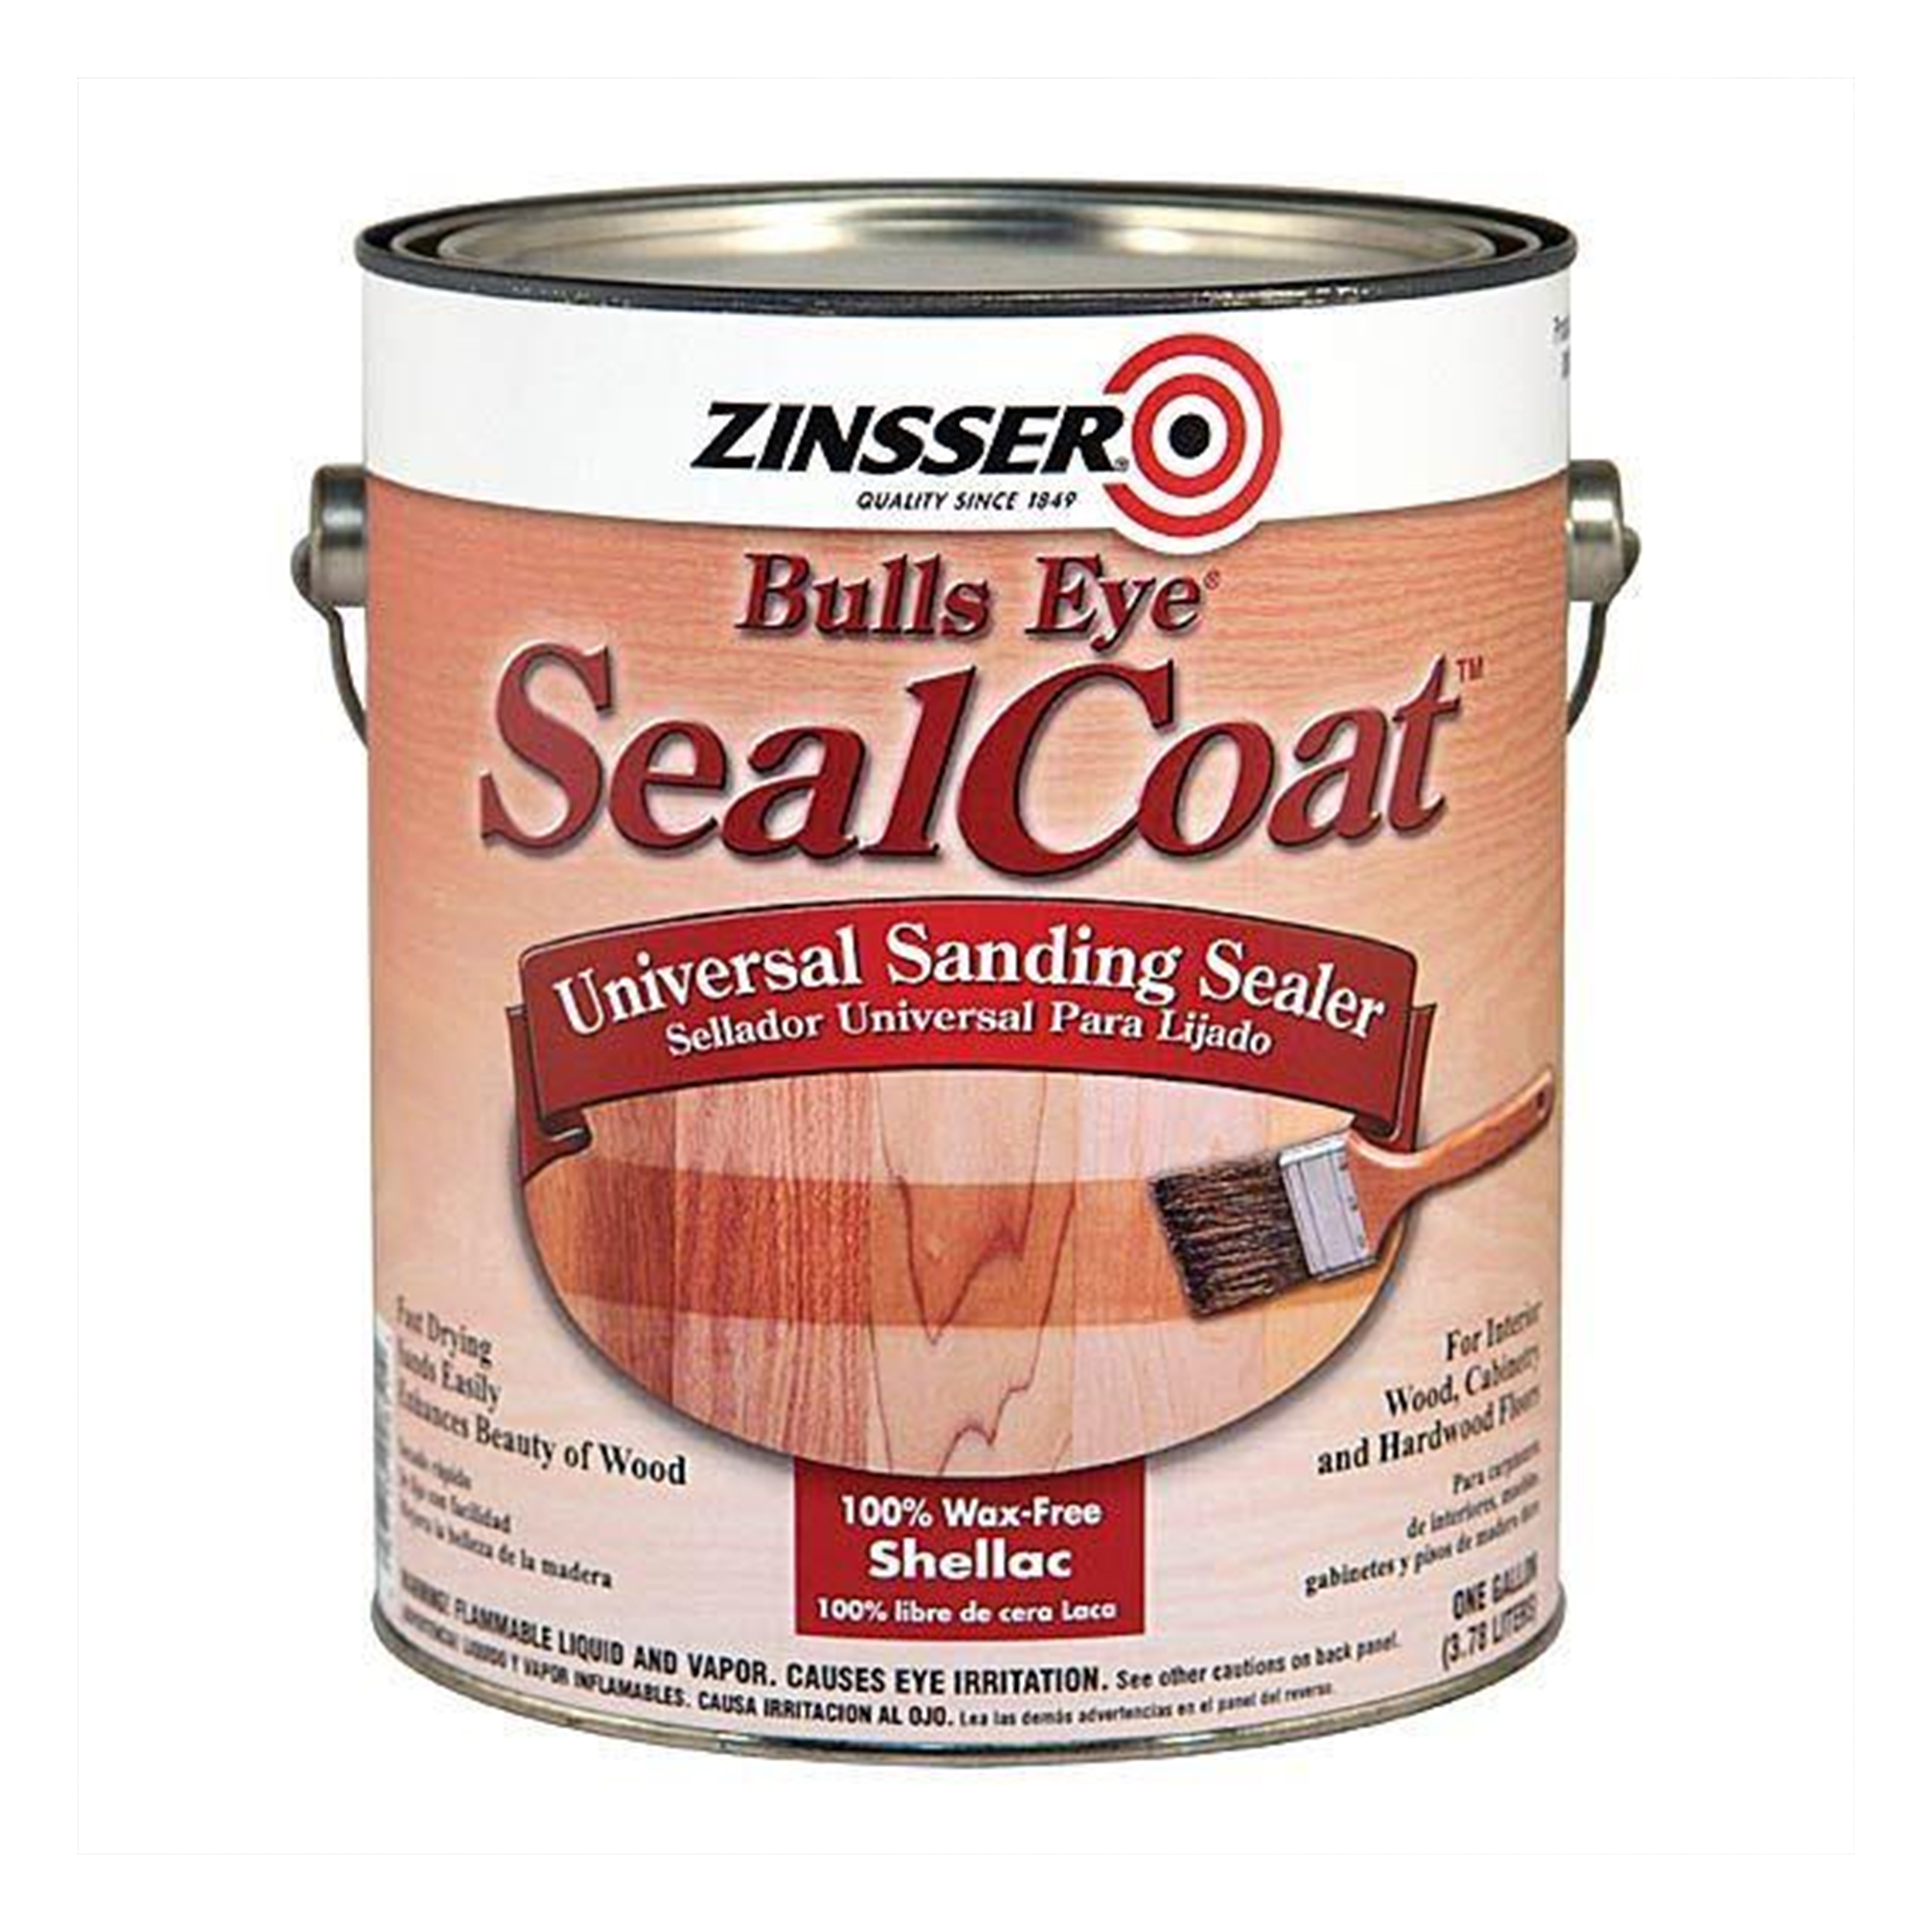 Bulls Eye Sealcoat Universal Sanding Sealer, 1 Gallon